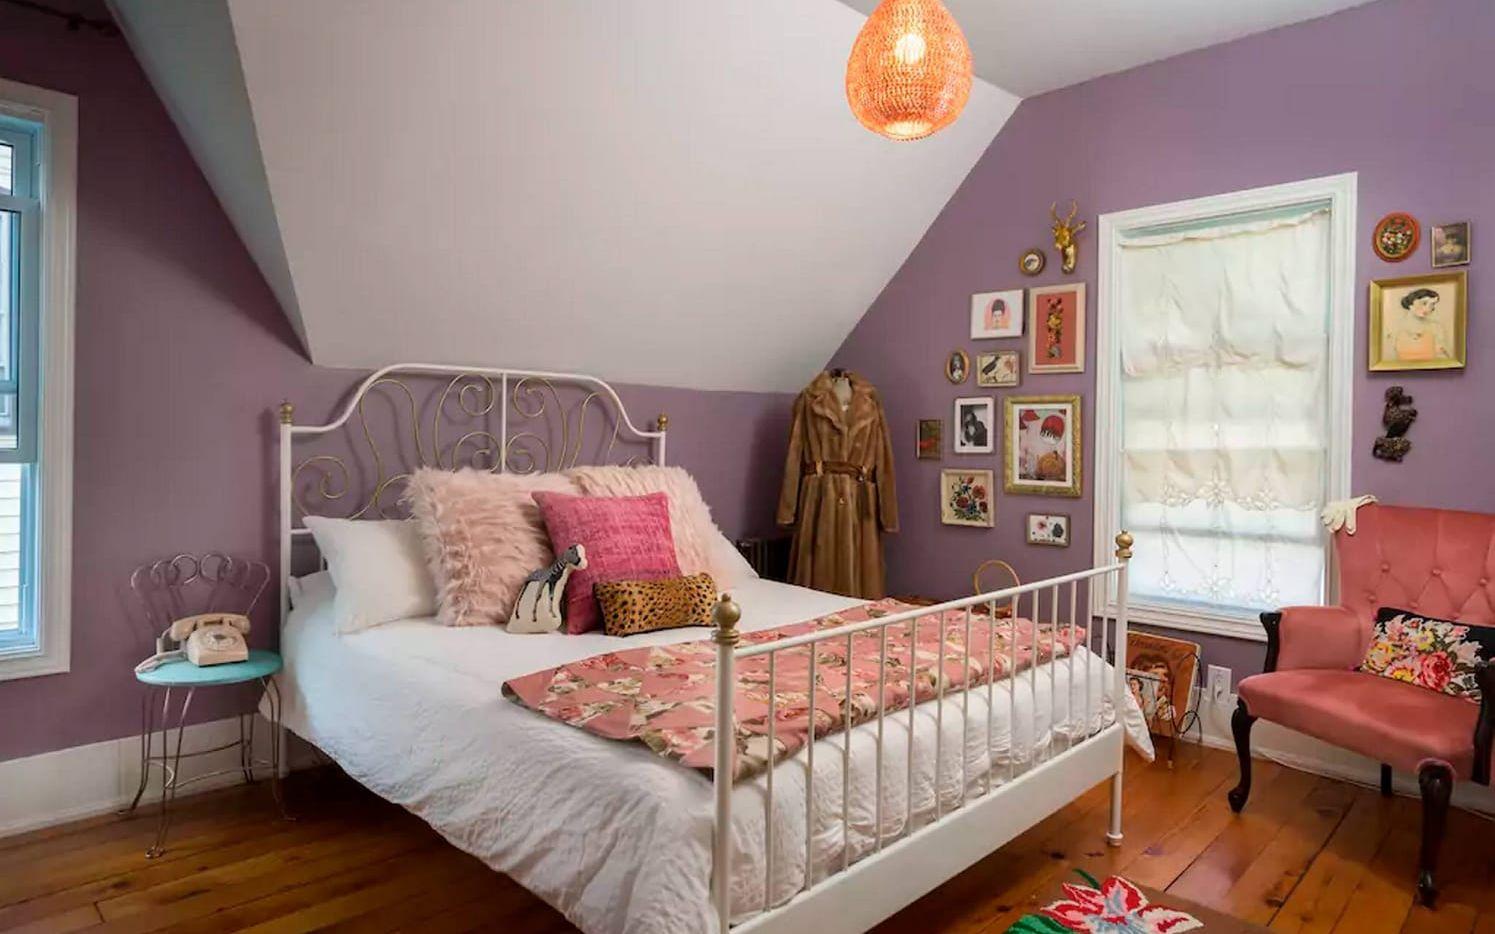 Ett av sovrummen går i "The Royal Tenenbaums"-tema, komplett med karaktären Margots pälskappa. Foto: Mr. Anderson's House / Airbnb